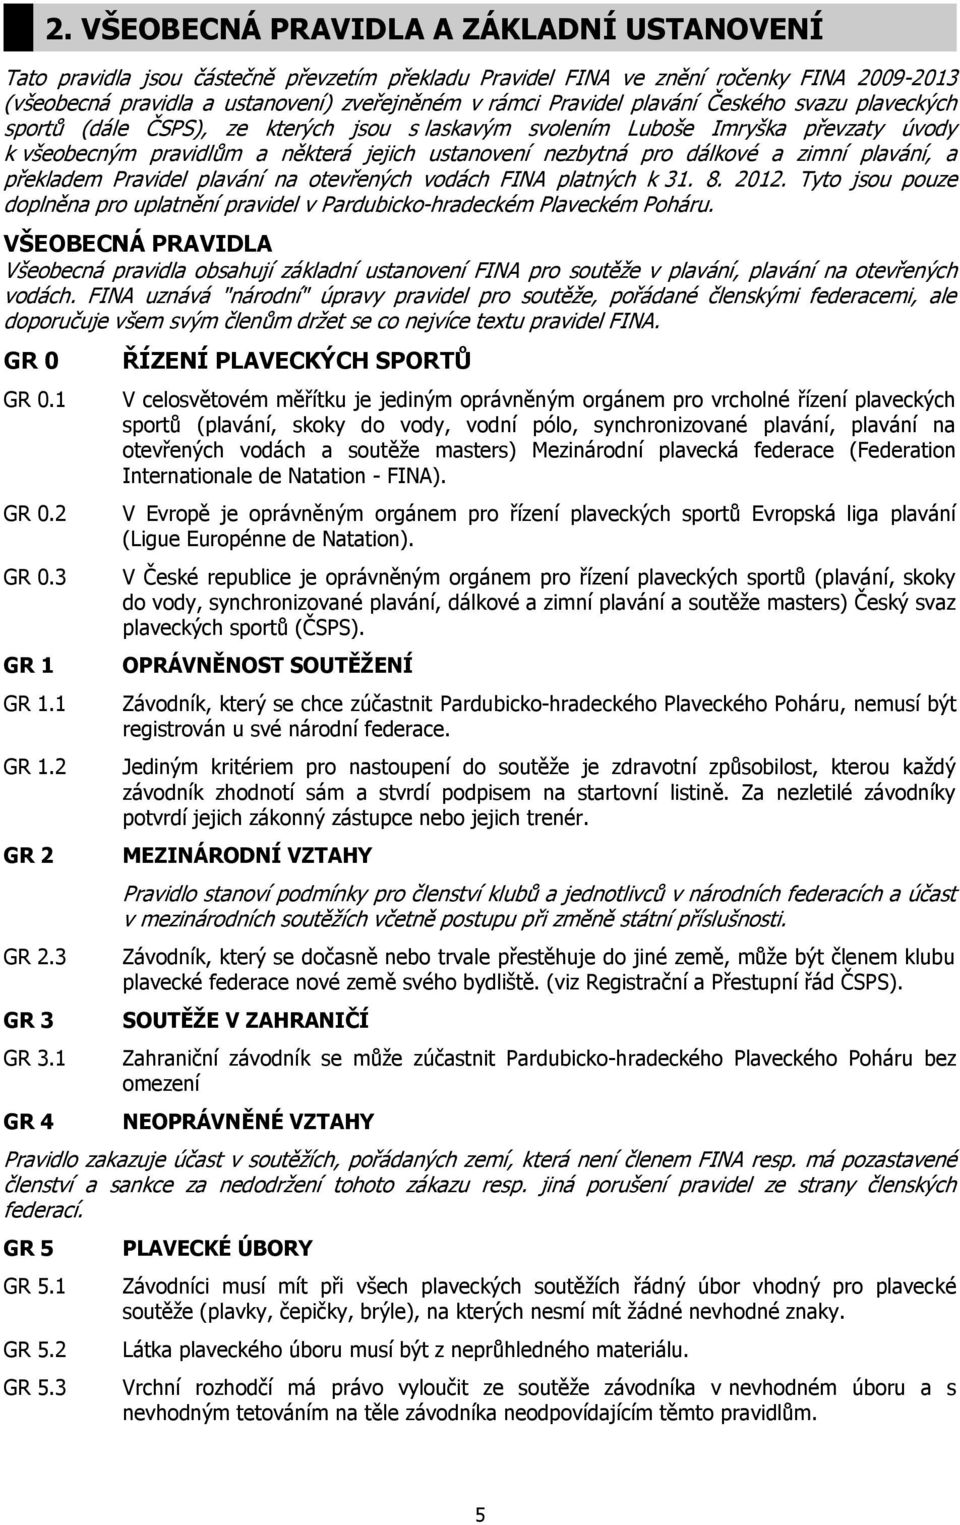 plavání, a překladem Pravidel plavání na otevřených vodách FINA platných k 31. 8. 2012. Tyto jsou pouze doplněna pro uplatnění pravidel v Pardubicko-hradeckém Plaveckém Poháru.